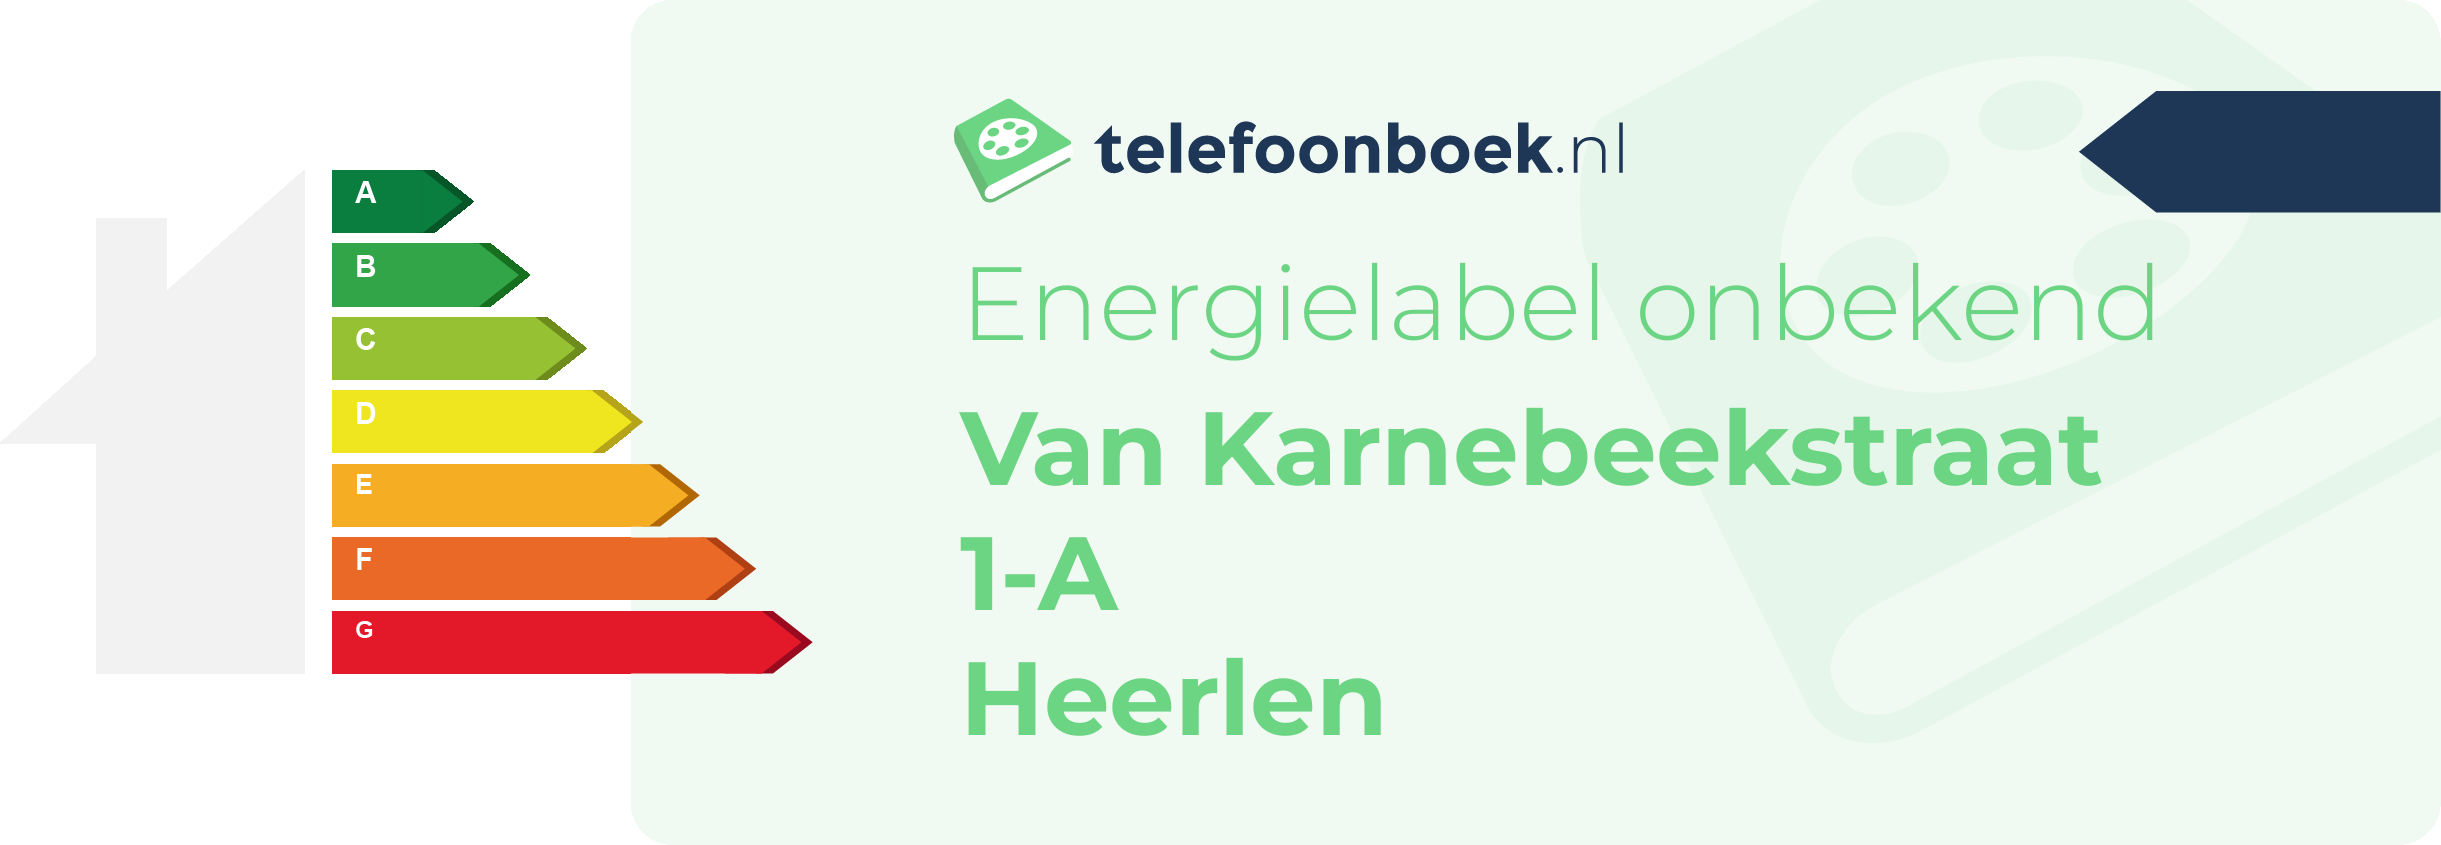 Energielabel Van Karnebeekstraat 1-A Heerlen